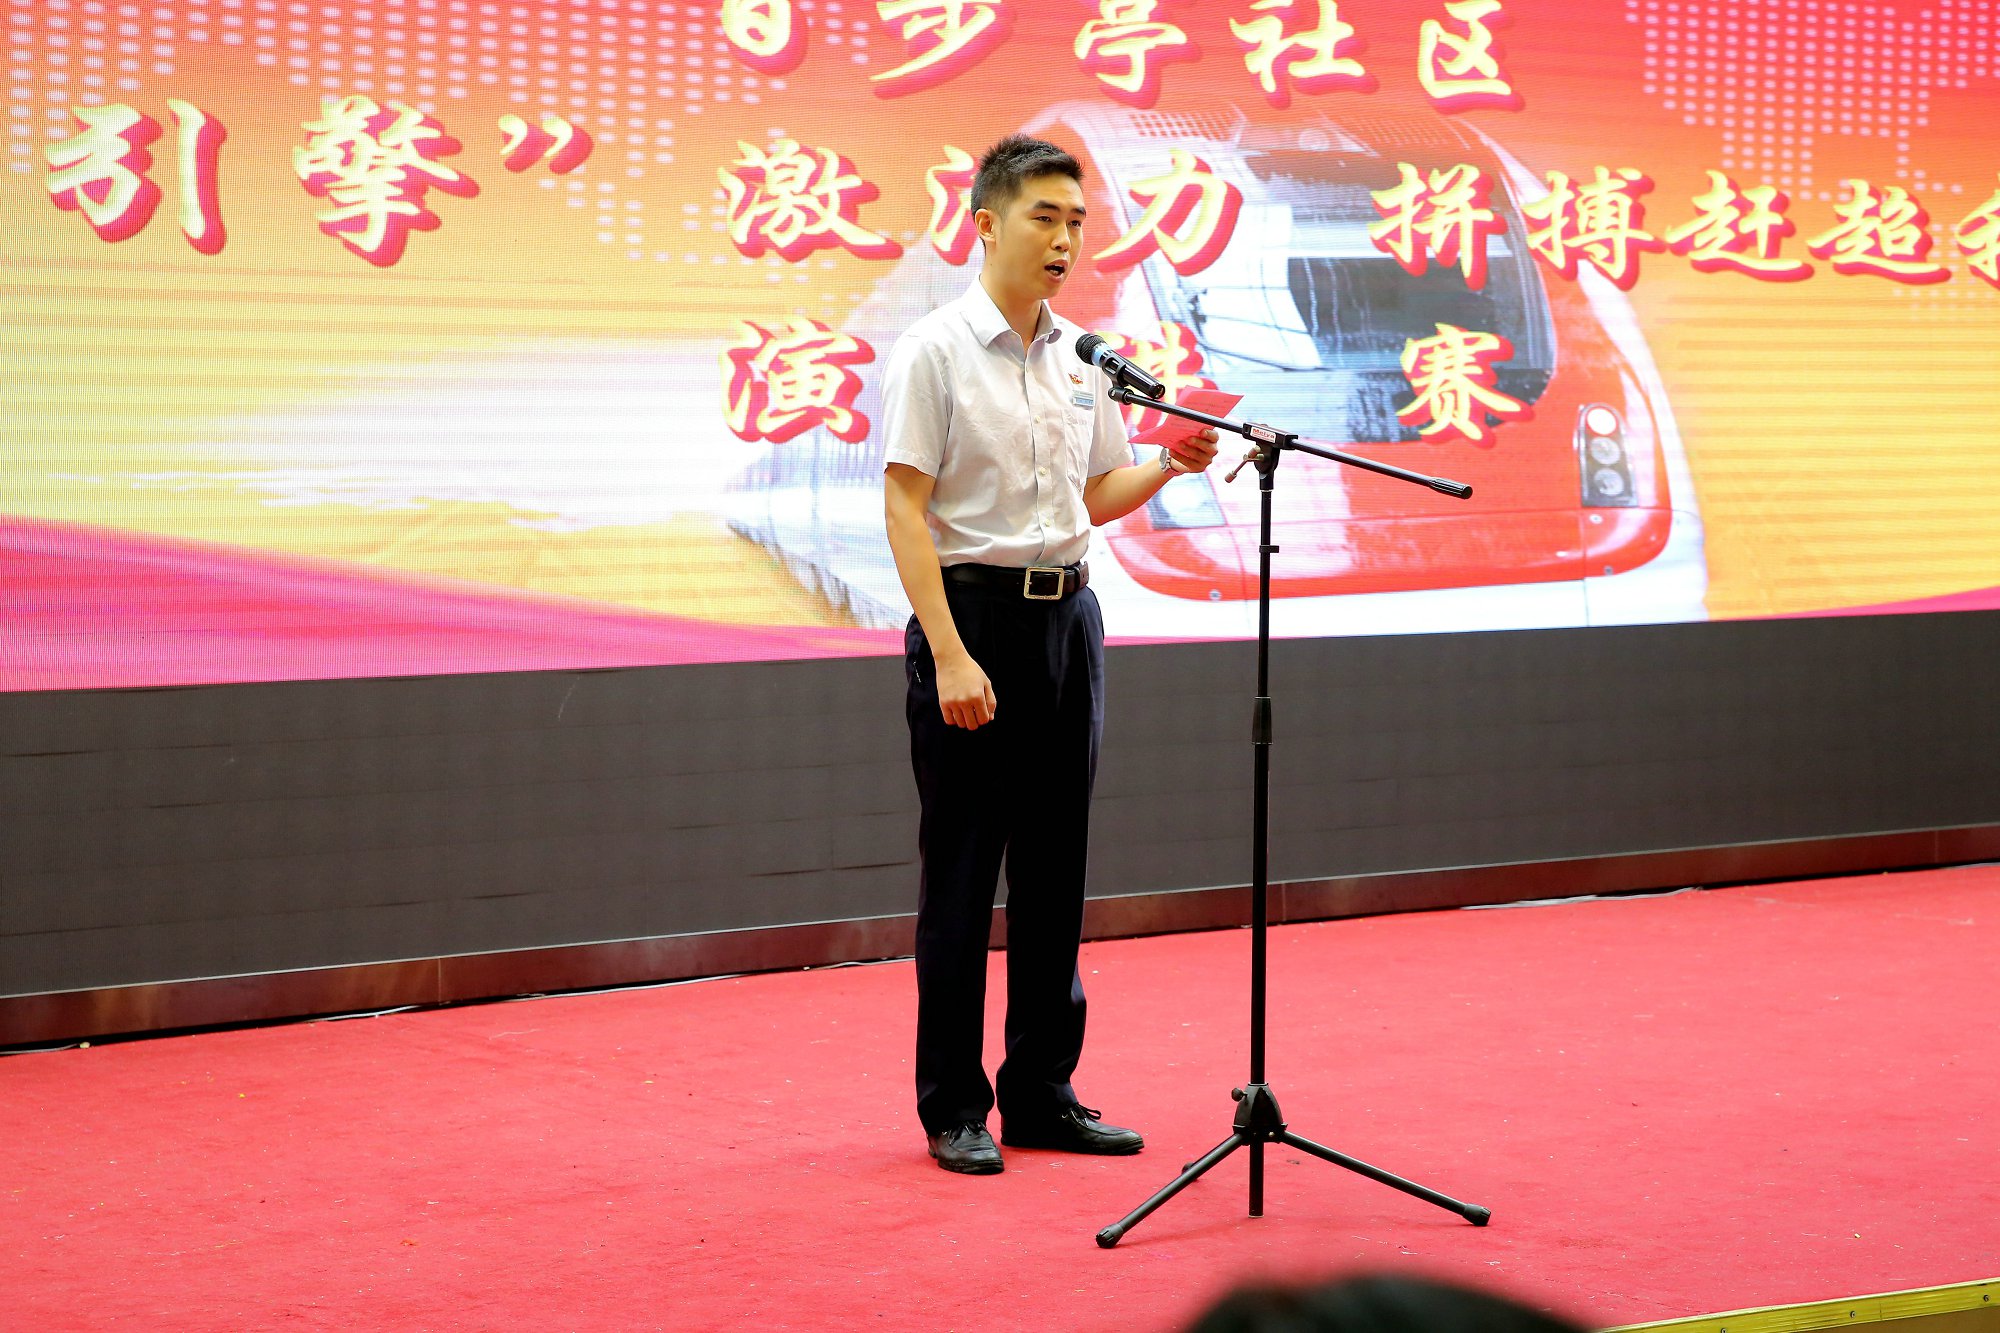 来自物业资产党支部的柳鑫讲述推广红色物业的故事.JPG